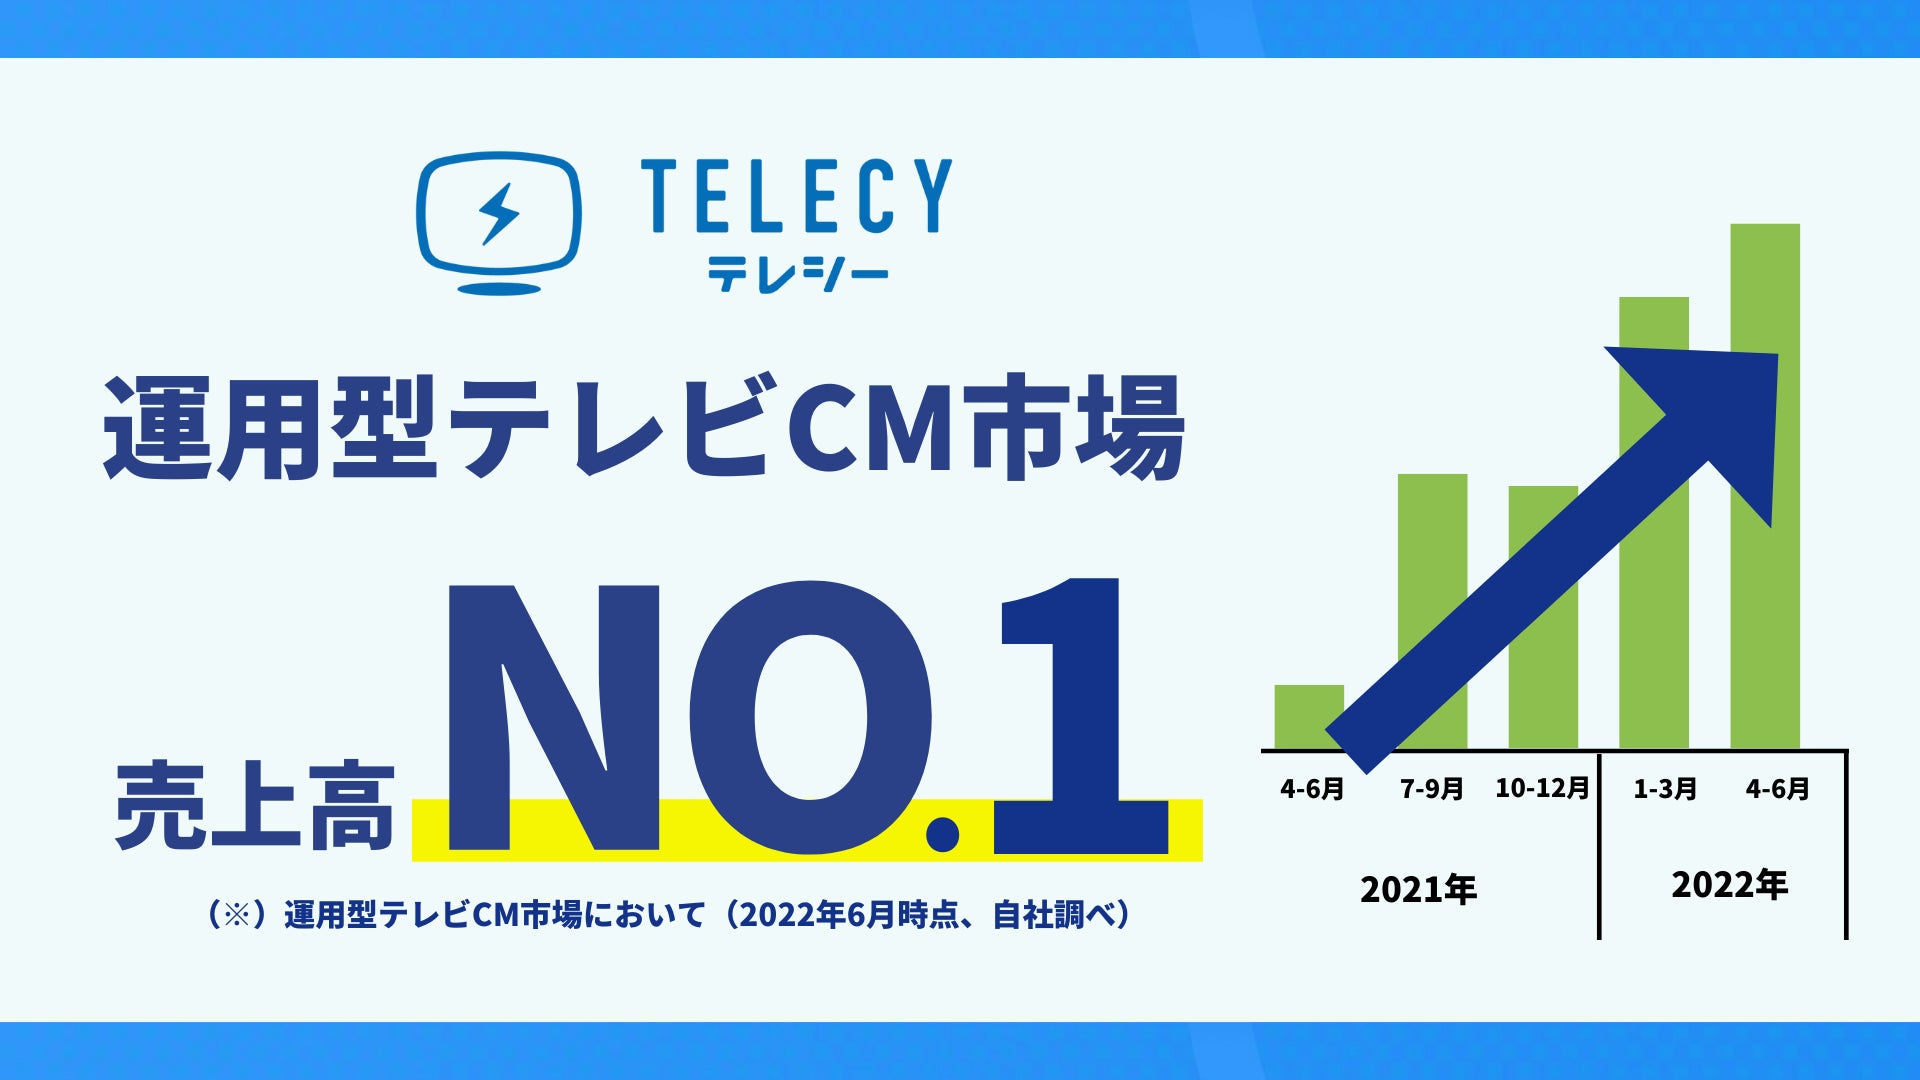 テレシー 、運用型テレビCM市場において売上高1位のサブ画像1